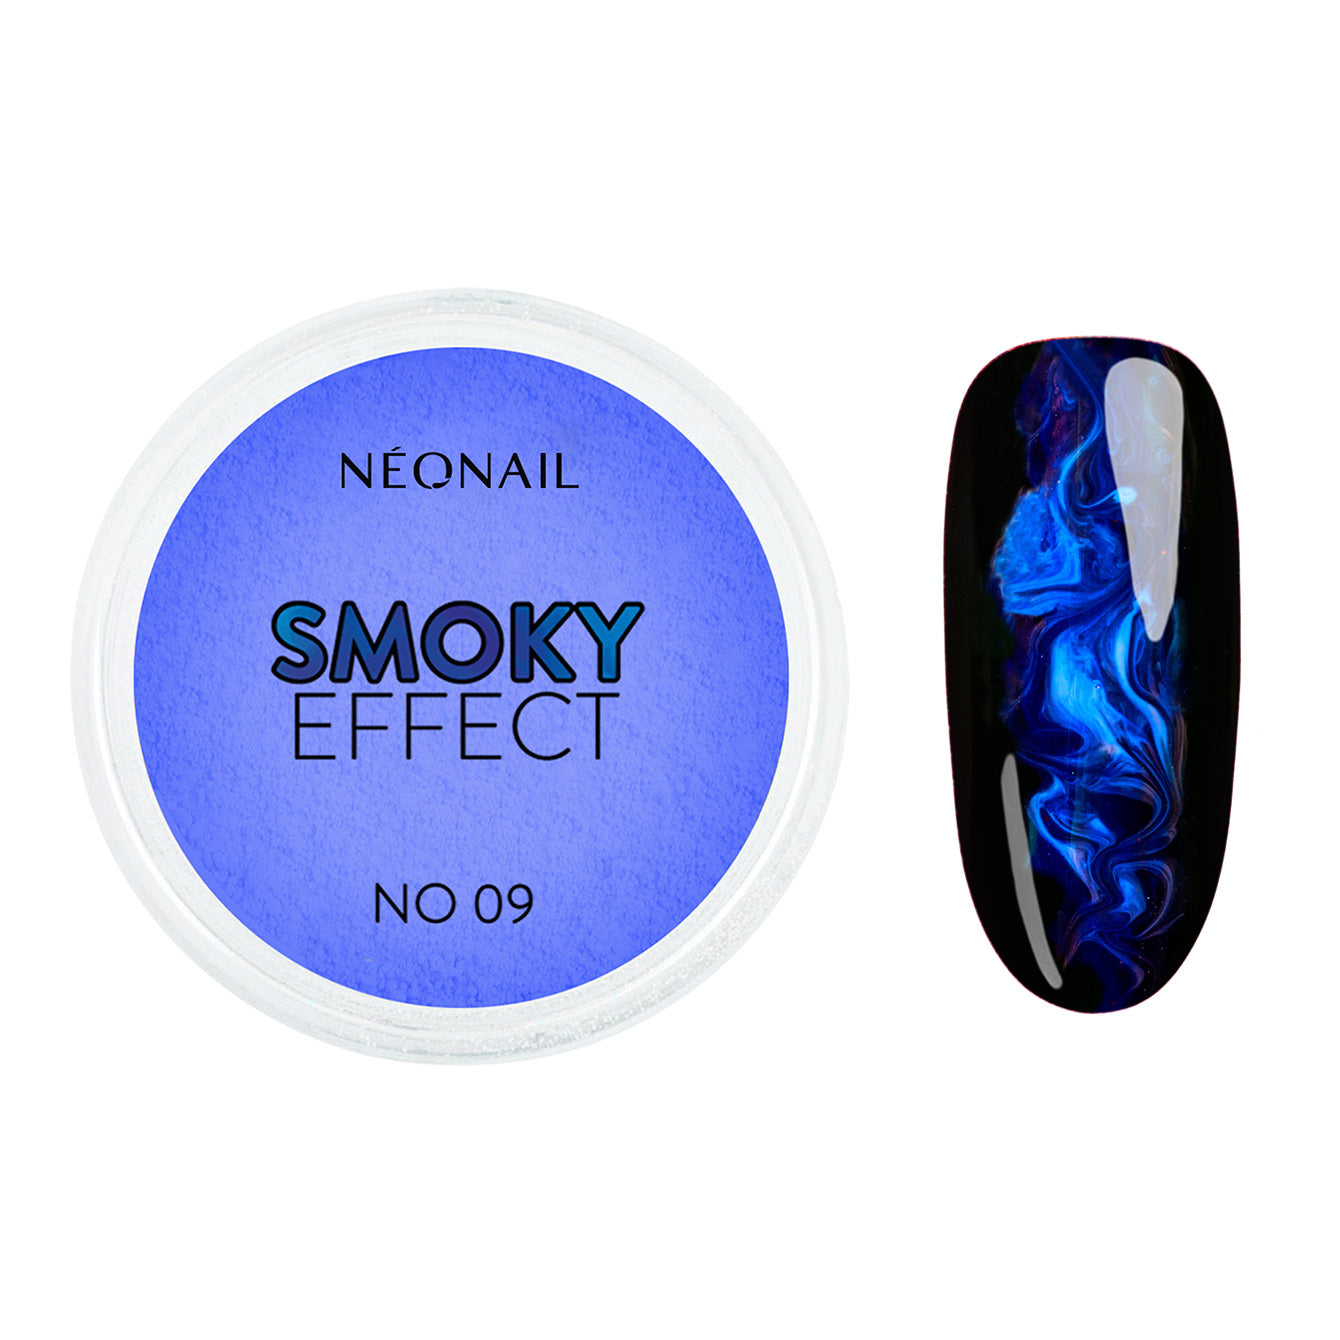 Neglepynt - Smoky Effect No 9 - 2g-Neglepynt-NeoNail-NR Kosmetik